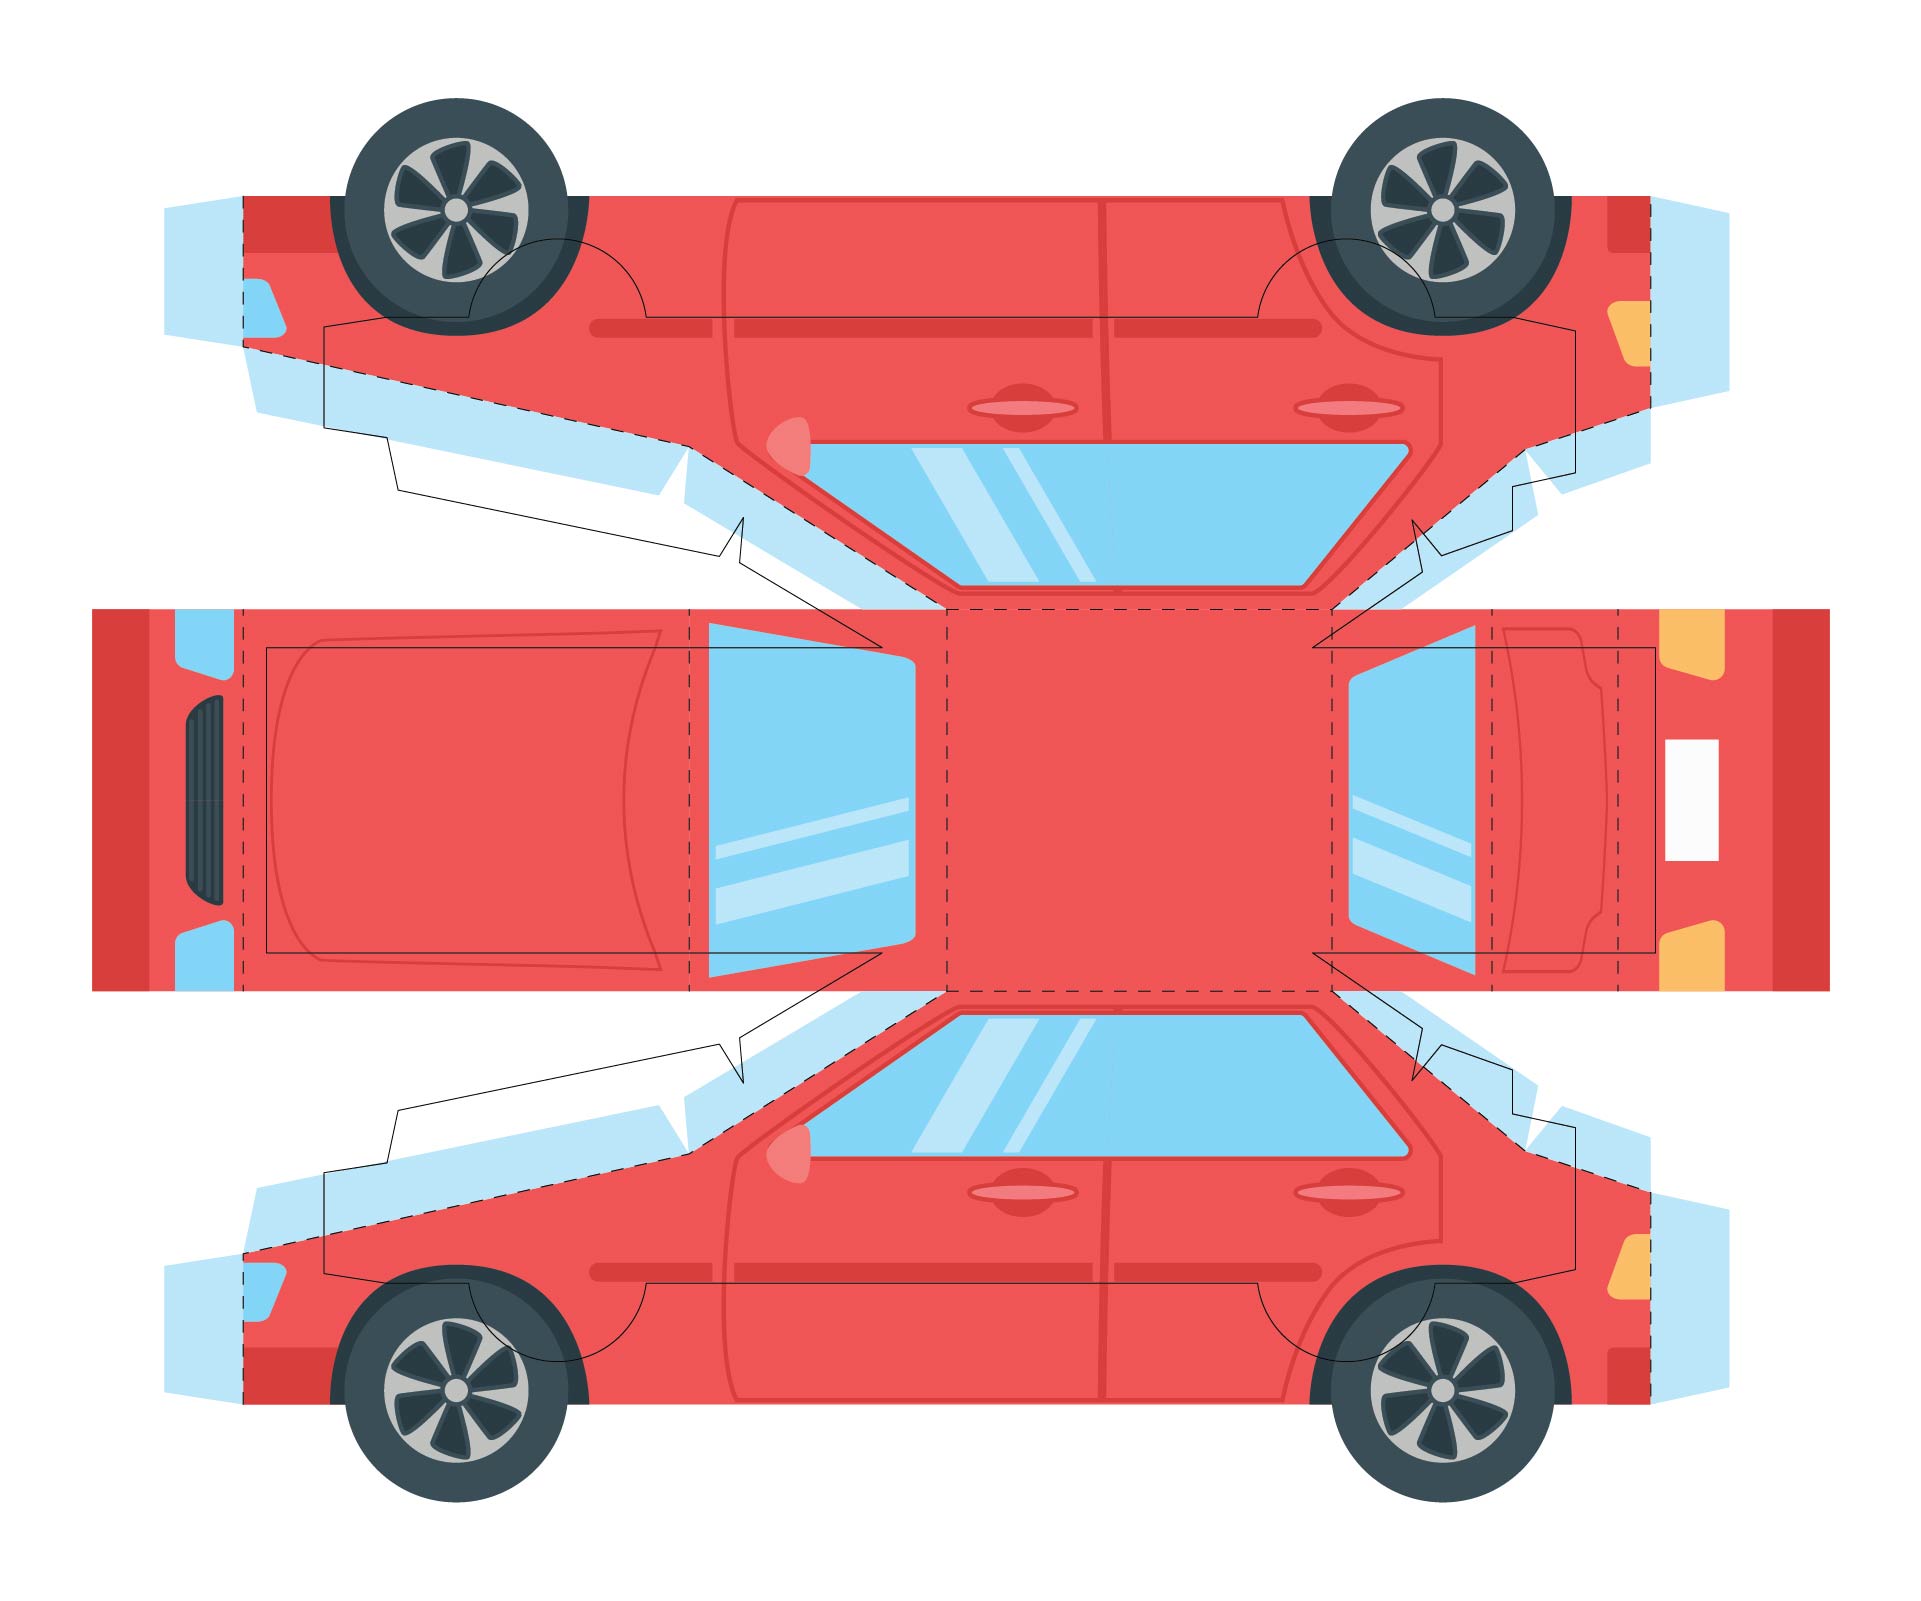 3D Paper Car Cut Out Templates